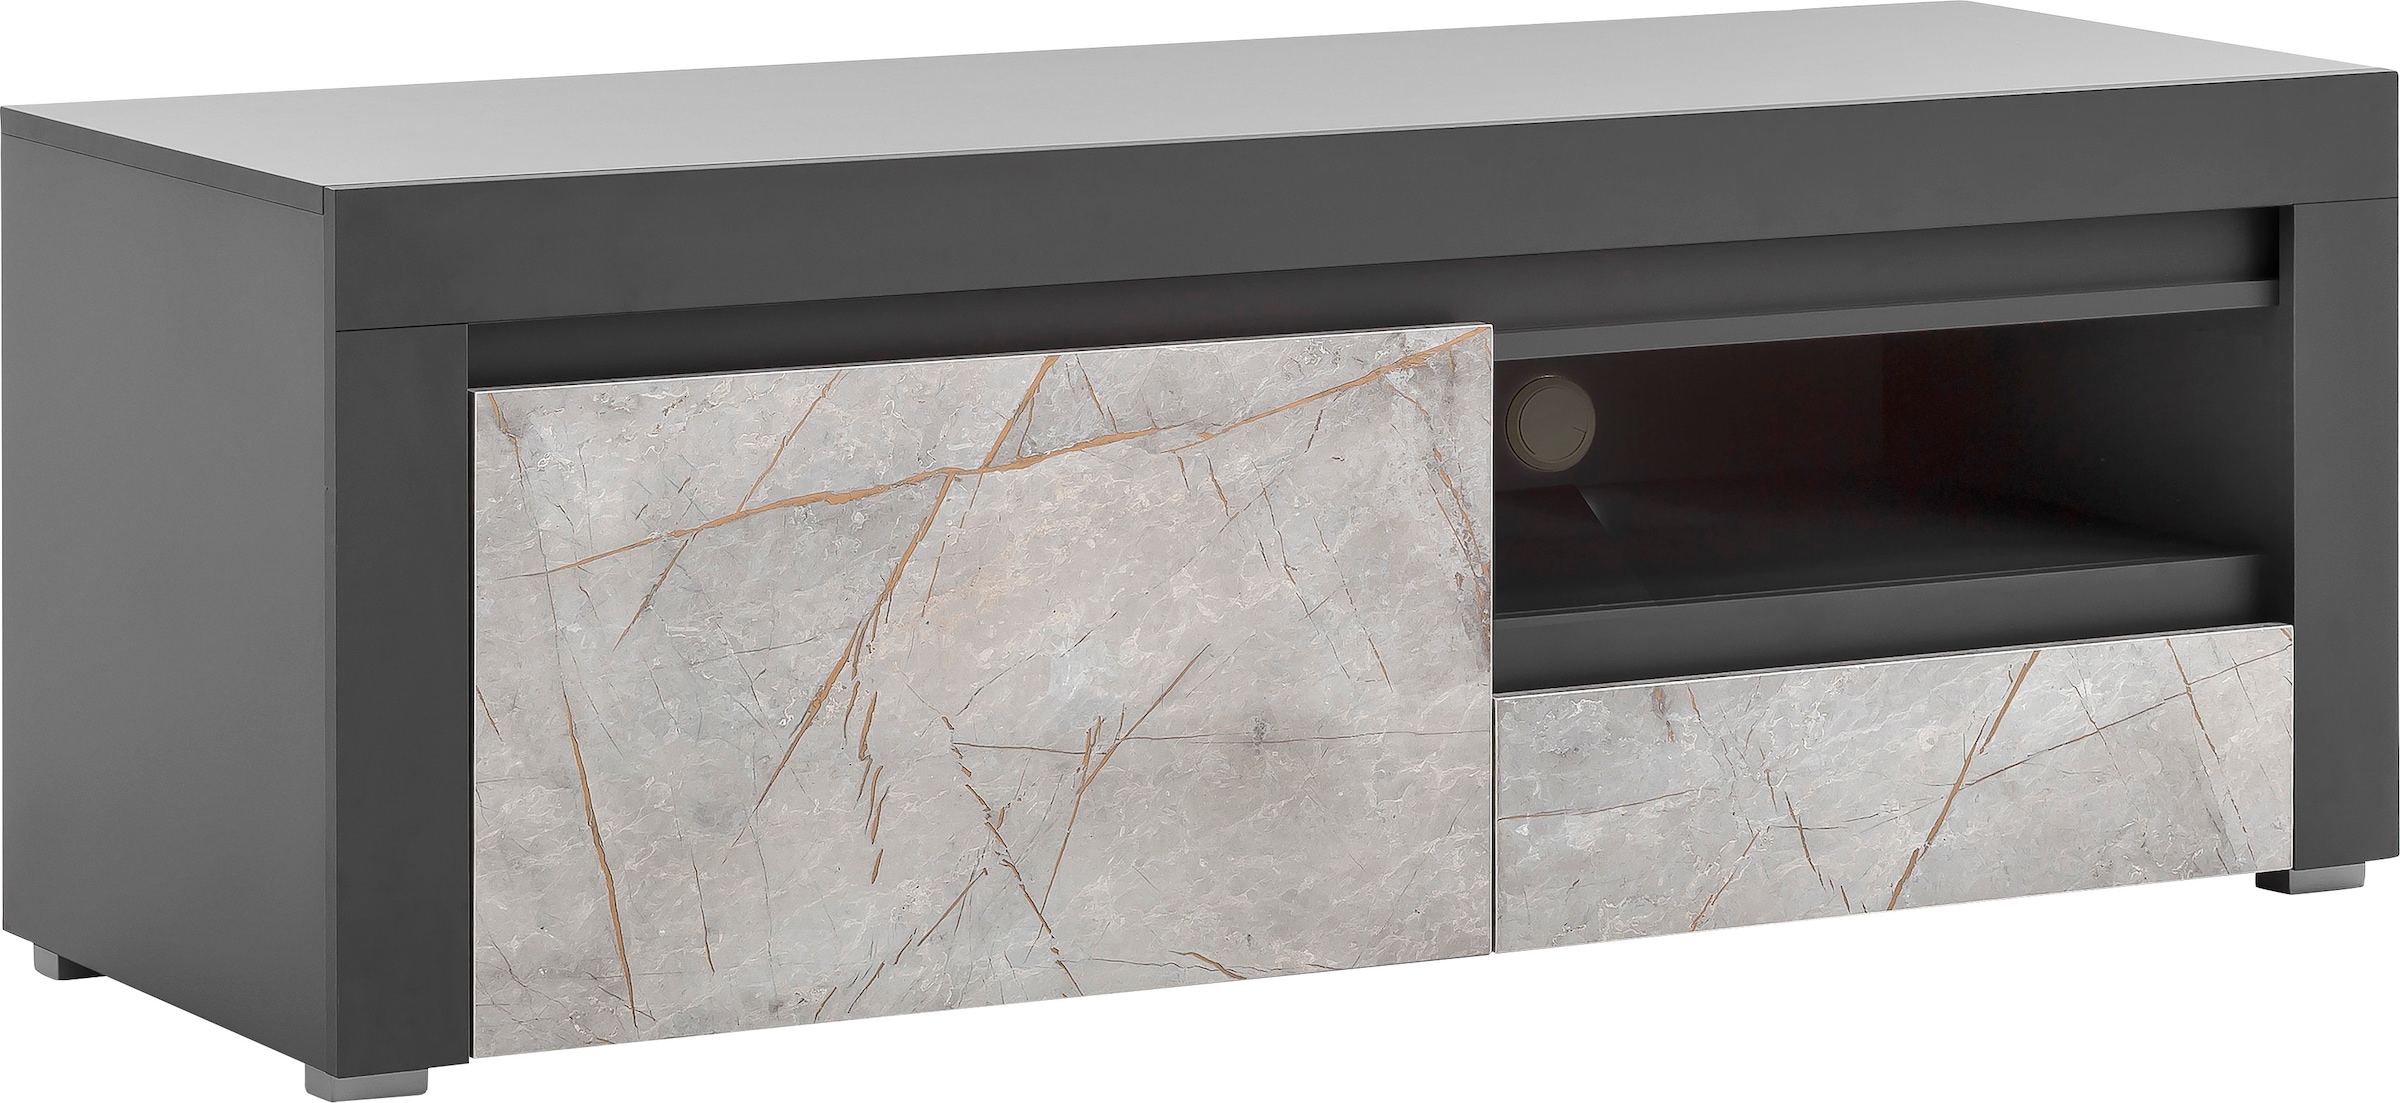 Home affaire Lowboard »Stone Marble«, mit einem edlen Marmor-Optik Dekor,  Breite 140 cm kaufen bei OTTO